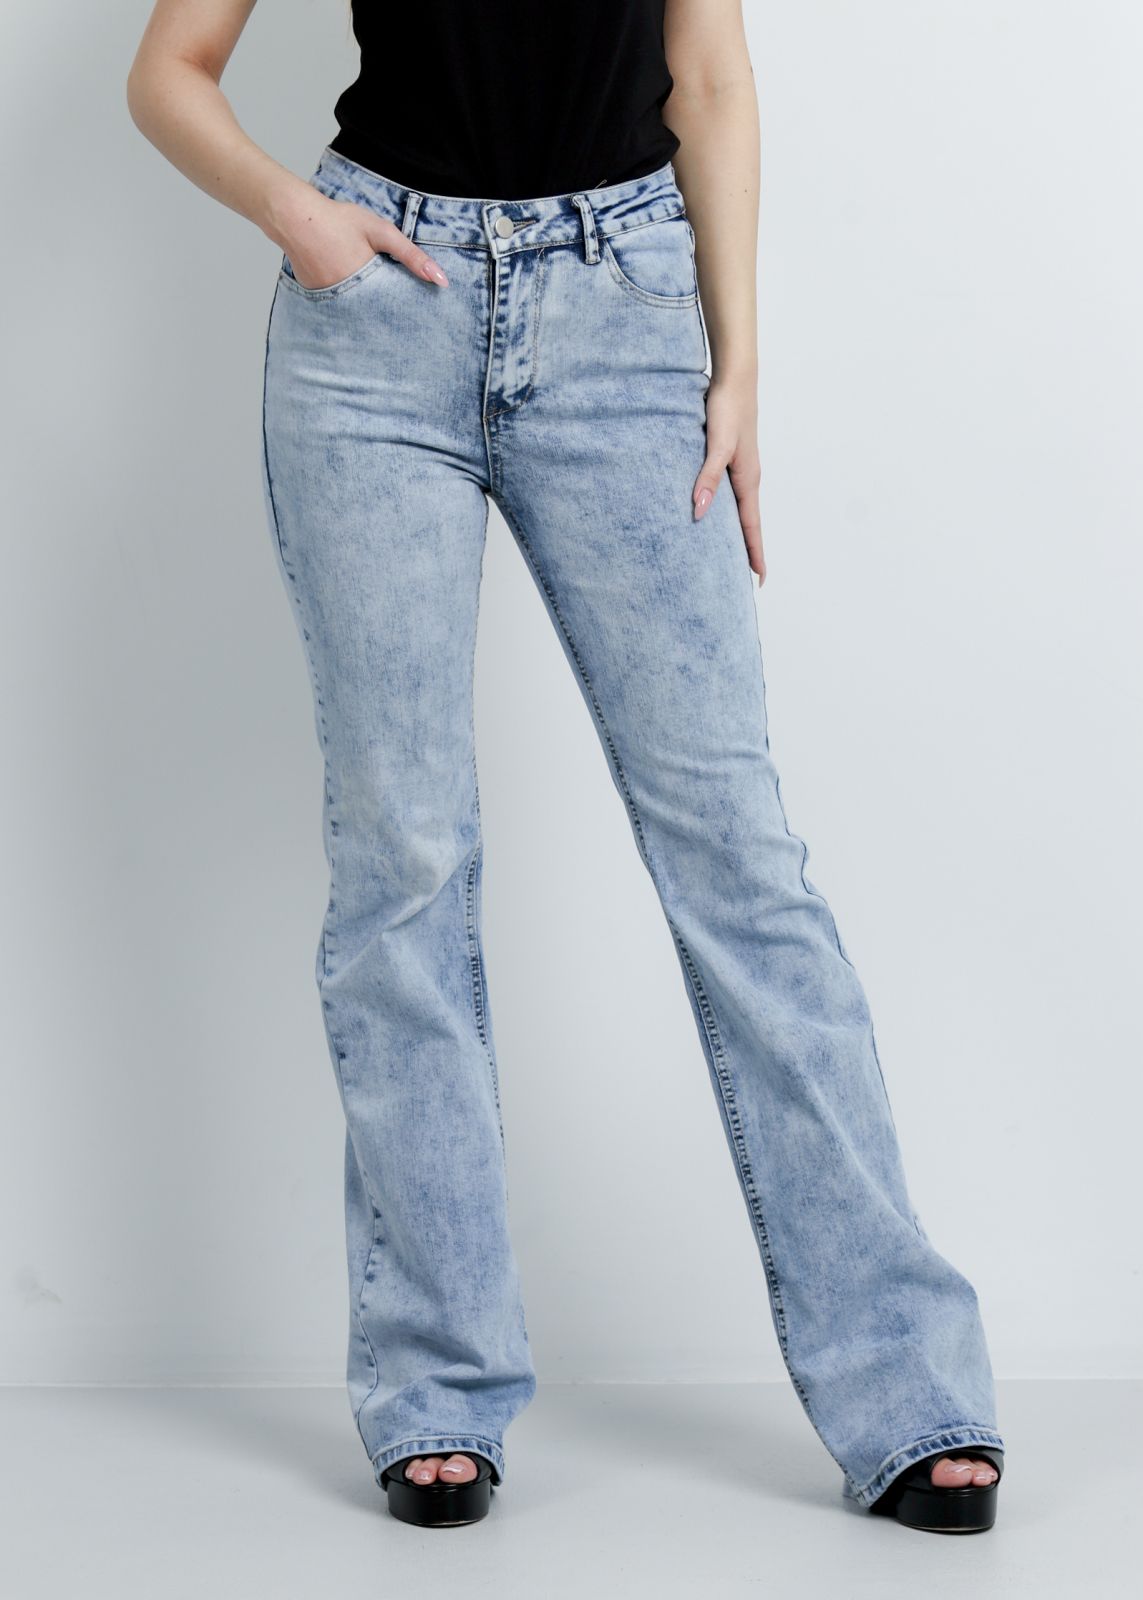 Men Distressed Denim Pants Stretch Slim Bootcut Jeans Trouser Button Detail  Long  eBay